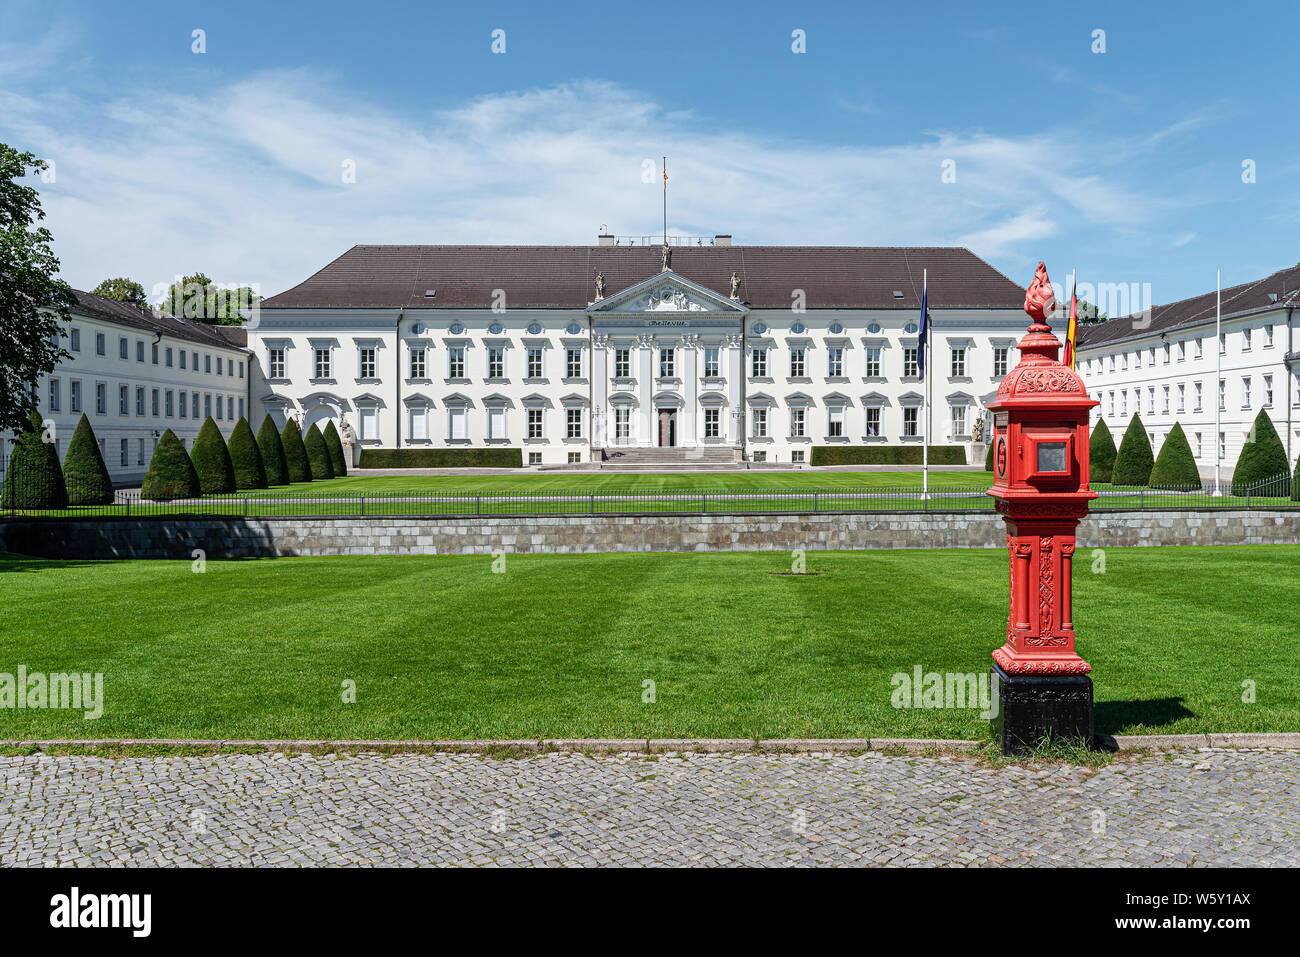 Berlin, Allemagne 2019-24-07 : rouge historique d'alarme incendie, alarme de la rue Fort, à l'extérieur du château de Bellevue à Berlin, Allemagne Banque D'Images